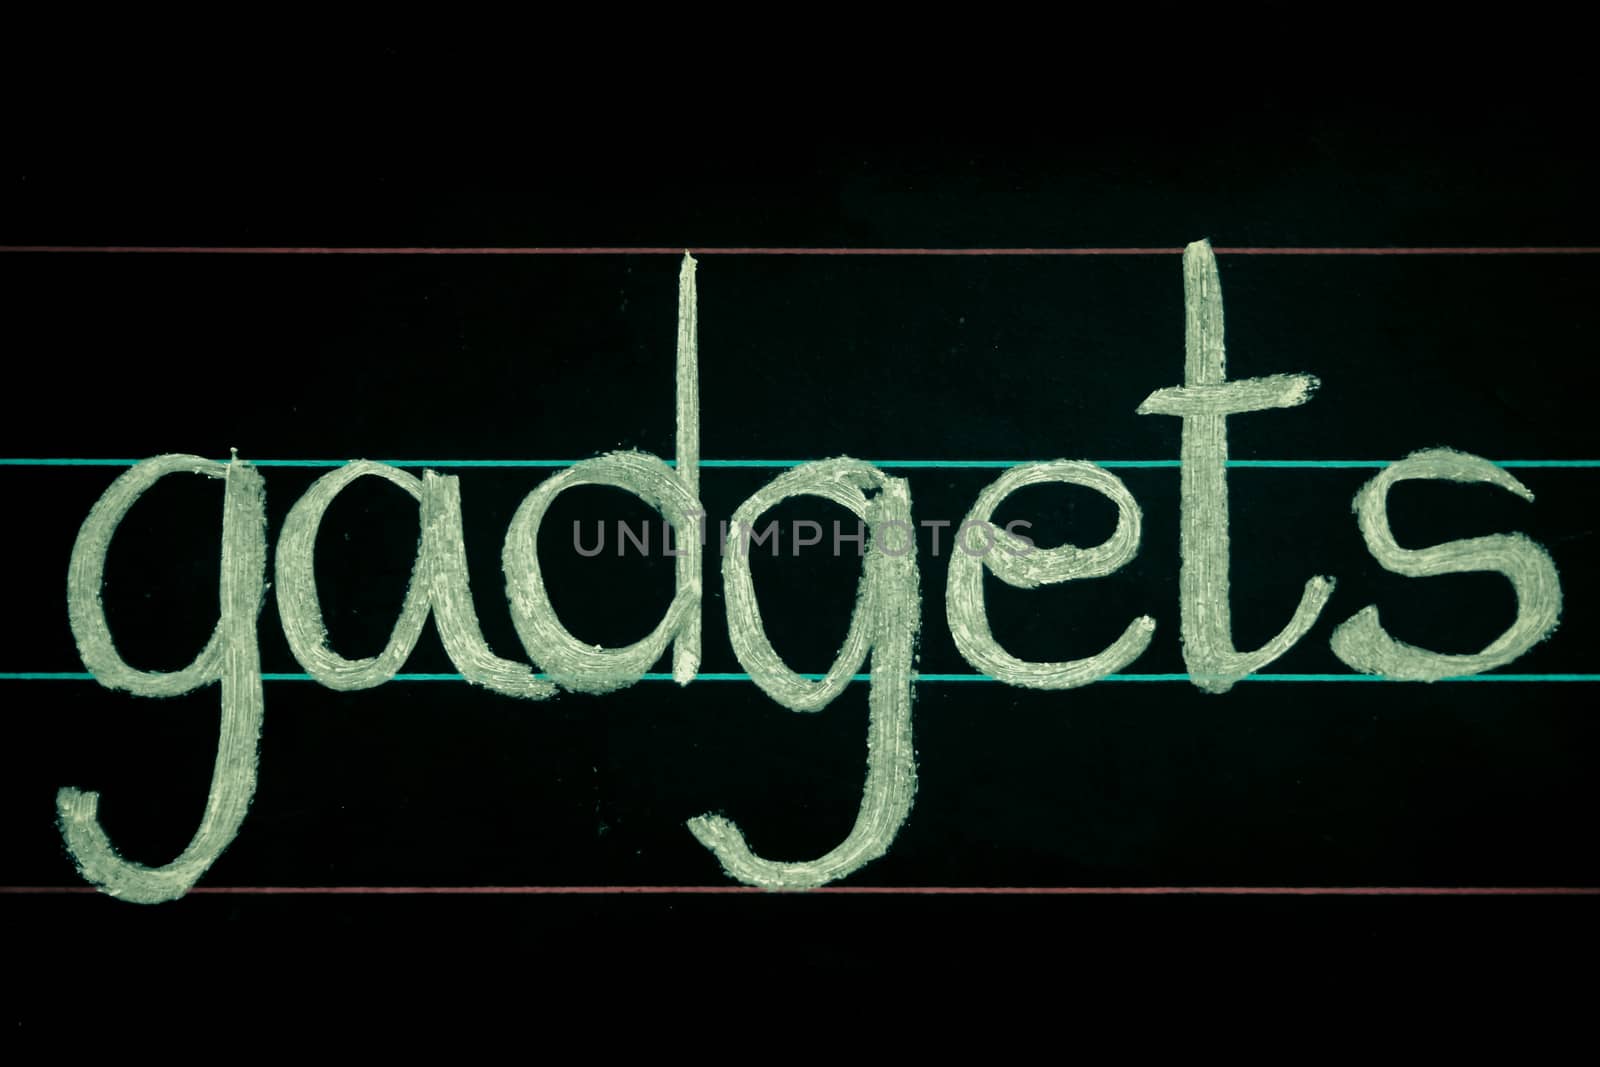 gadgets phrase handwritten on blackboard by yands